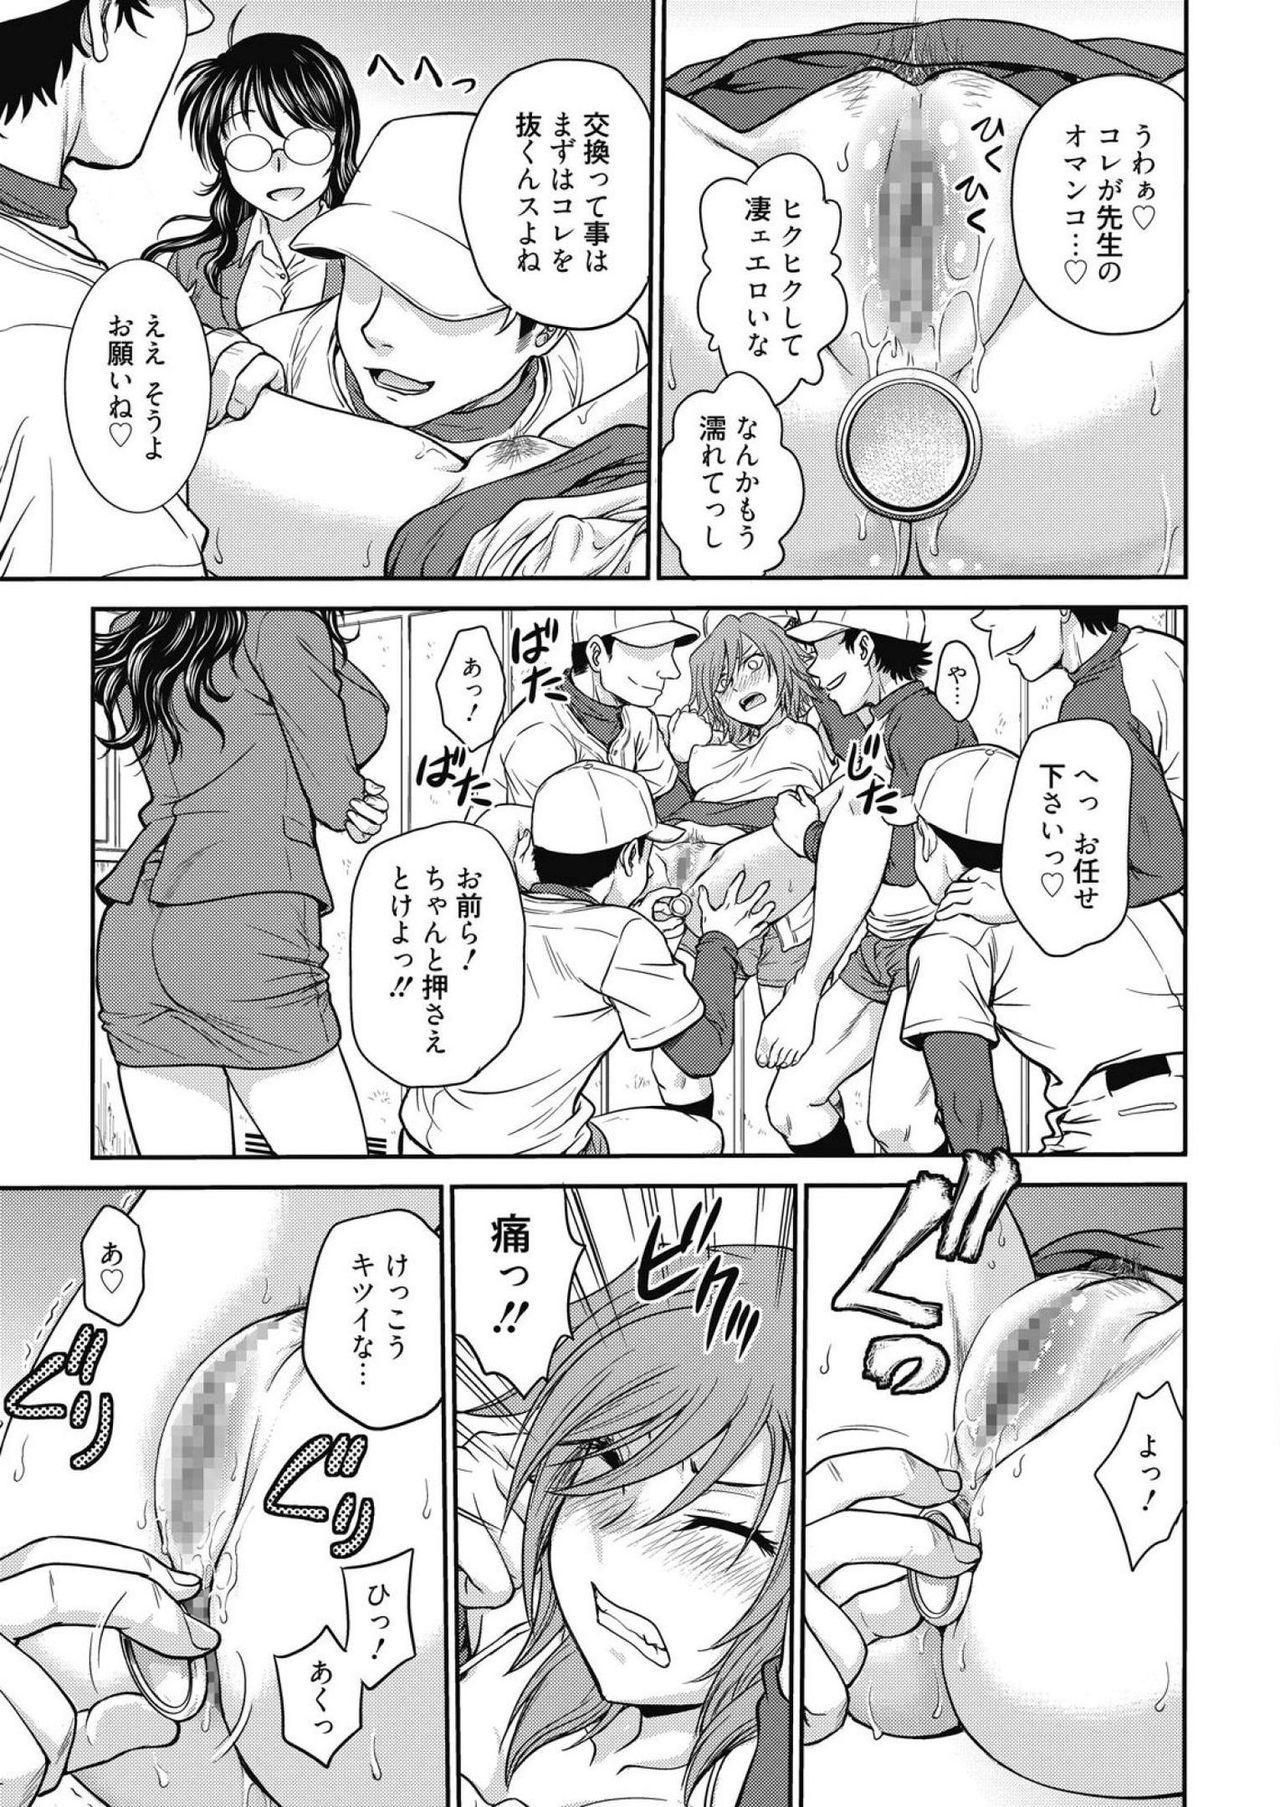 Freak Web Manga Bangaichi Vol. 14 Milk - Page 7